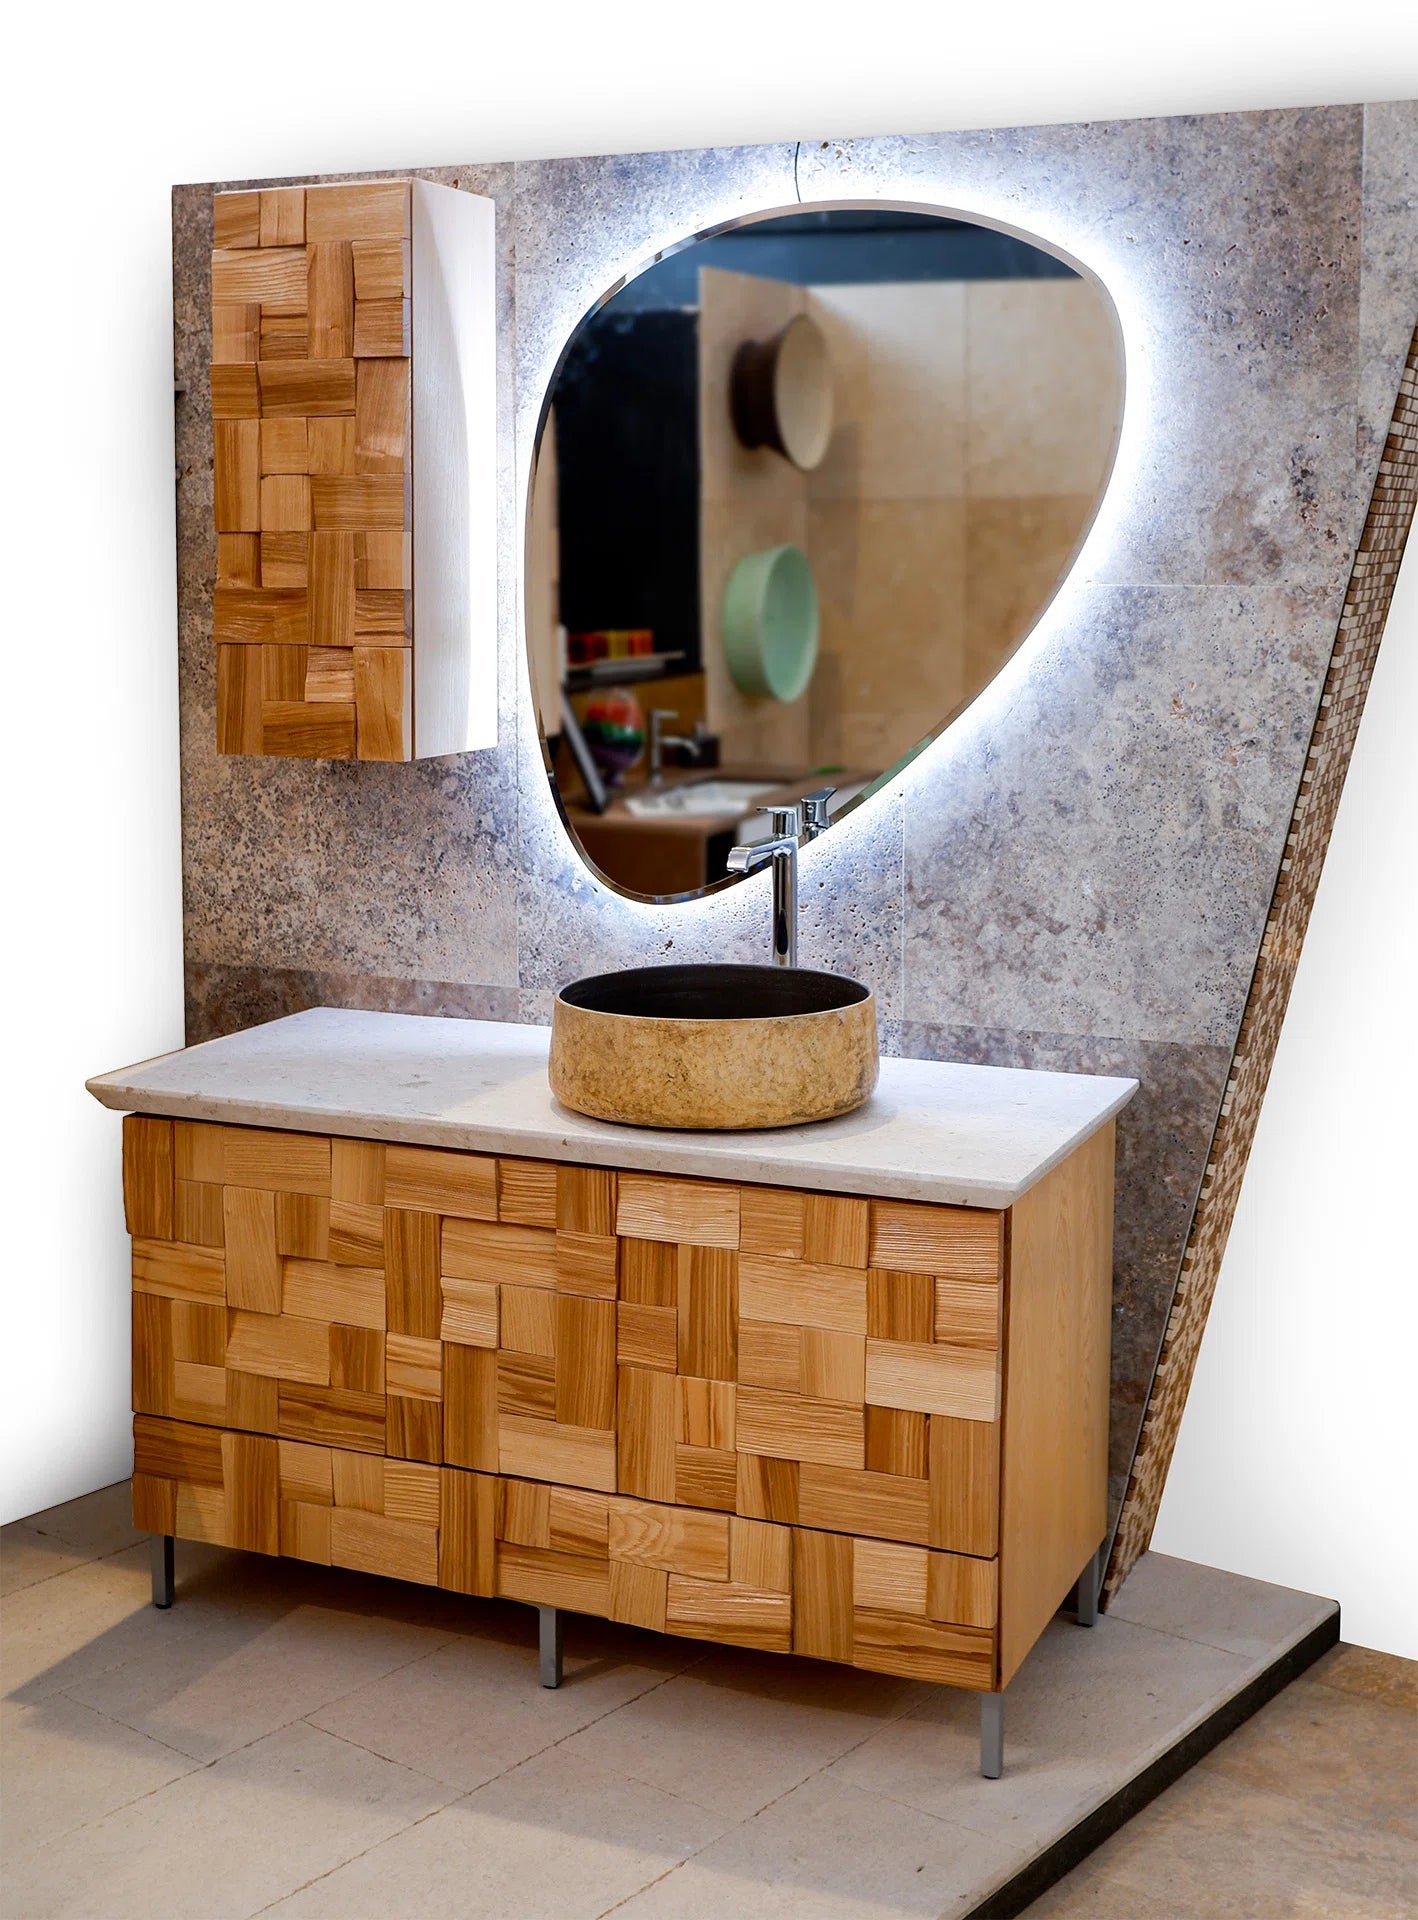 composizione di arredo per il bagno in stile moderno con dettagli in legno  e pietra naturali realizzato da stone art